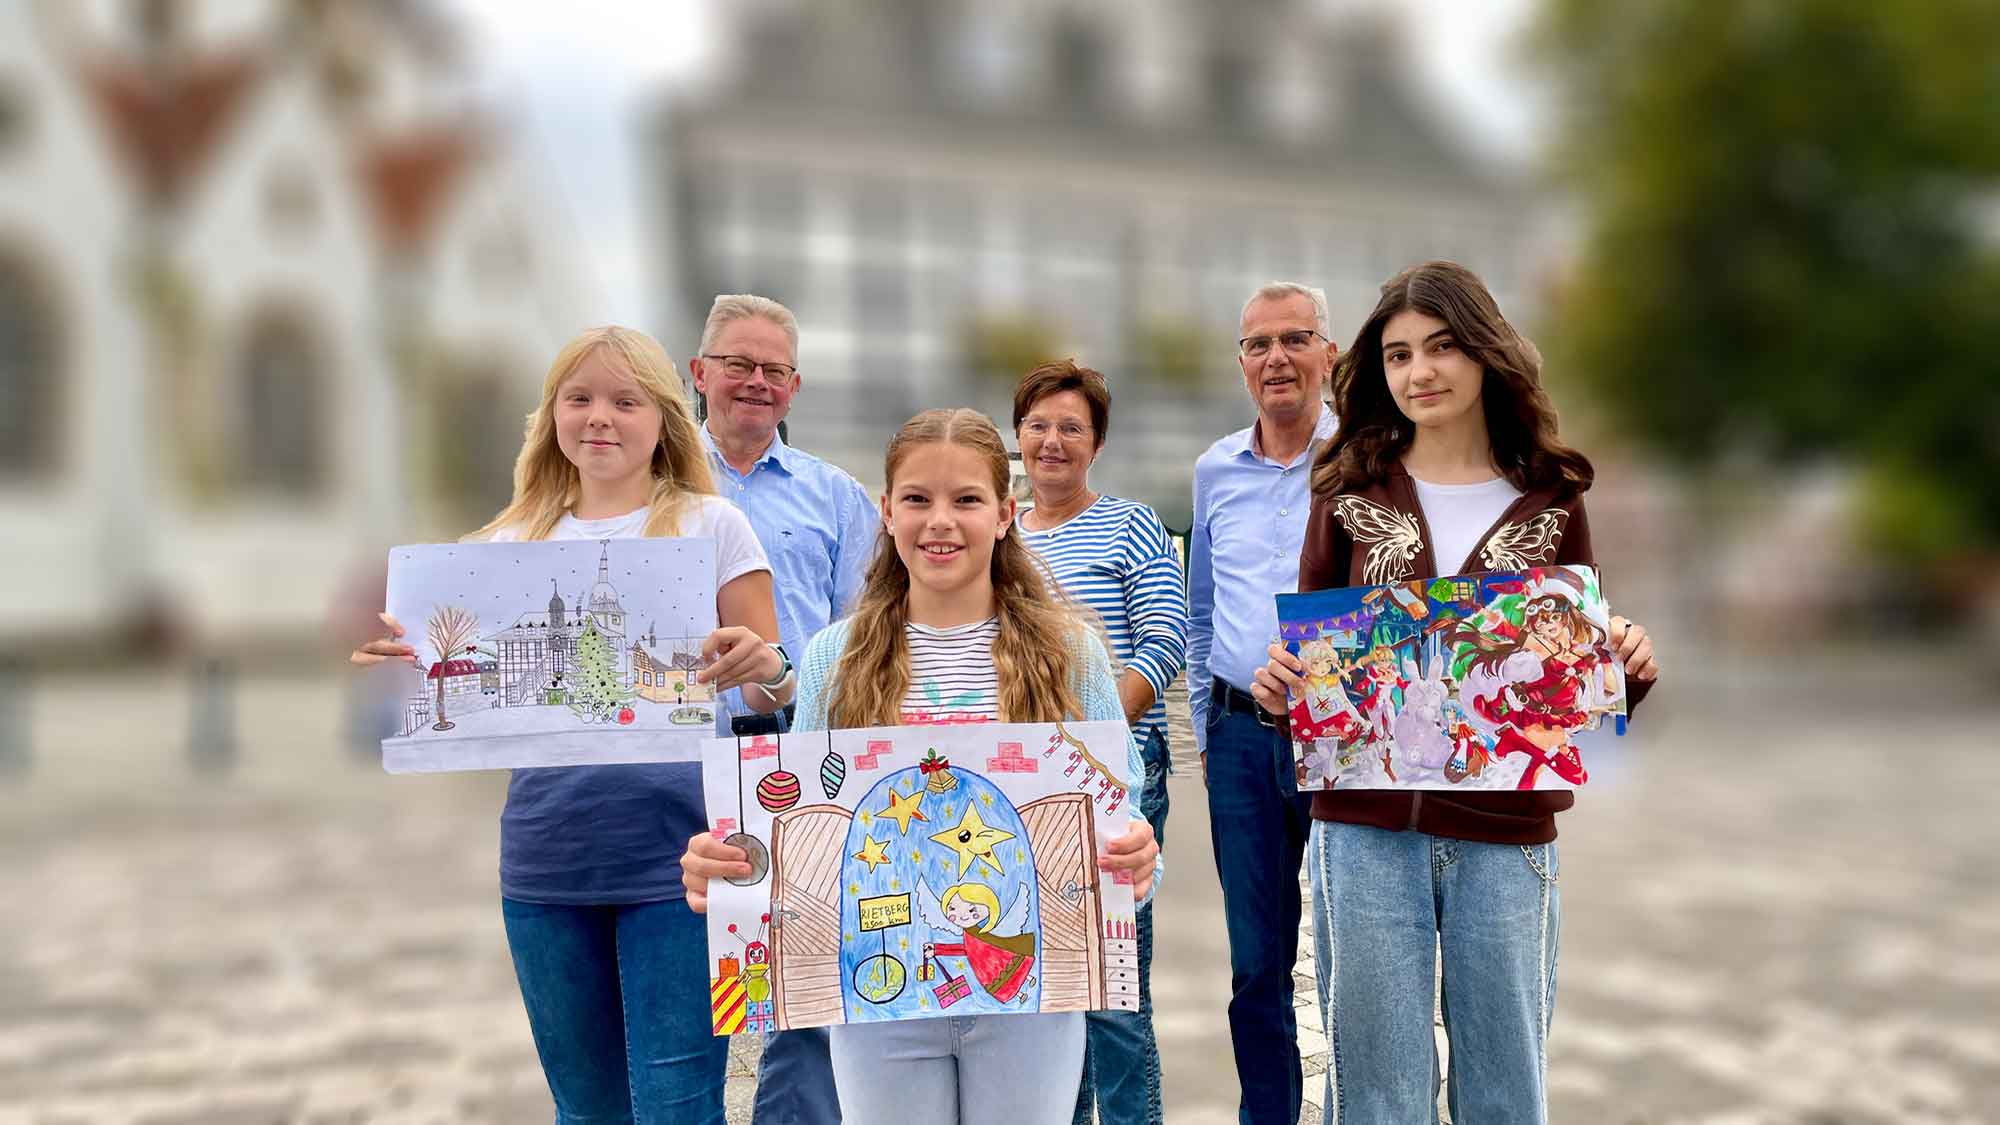 Bilder mit Rietberg Bezug werden prämiert, Bürgerstiftung Rietberg wählt Titelbild für Adventskalender 2023 aus